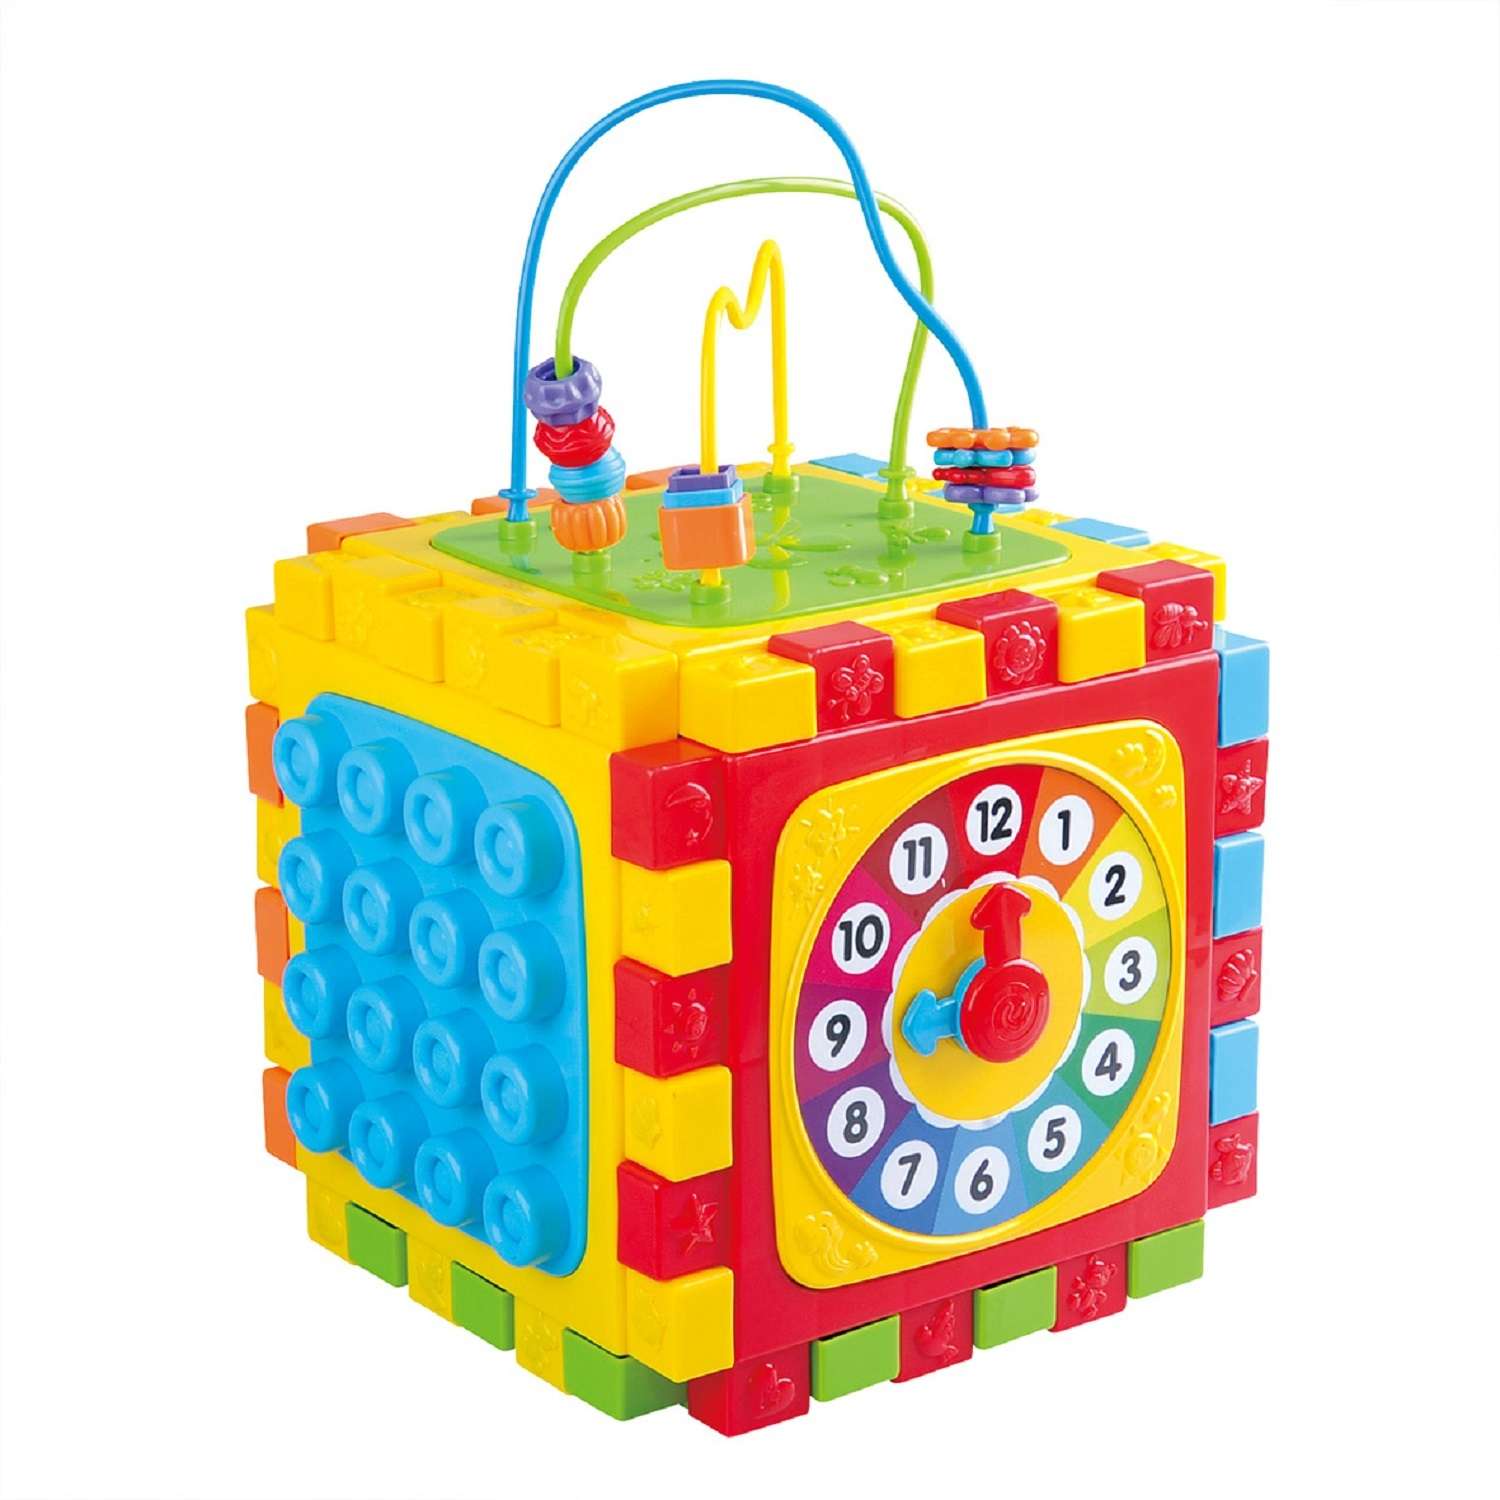 Игрушка развивающая Playgo Куб 6 в 1 Play 2147 - фото 1